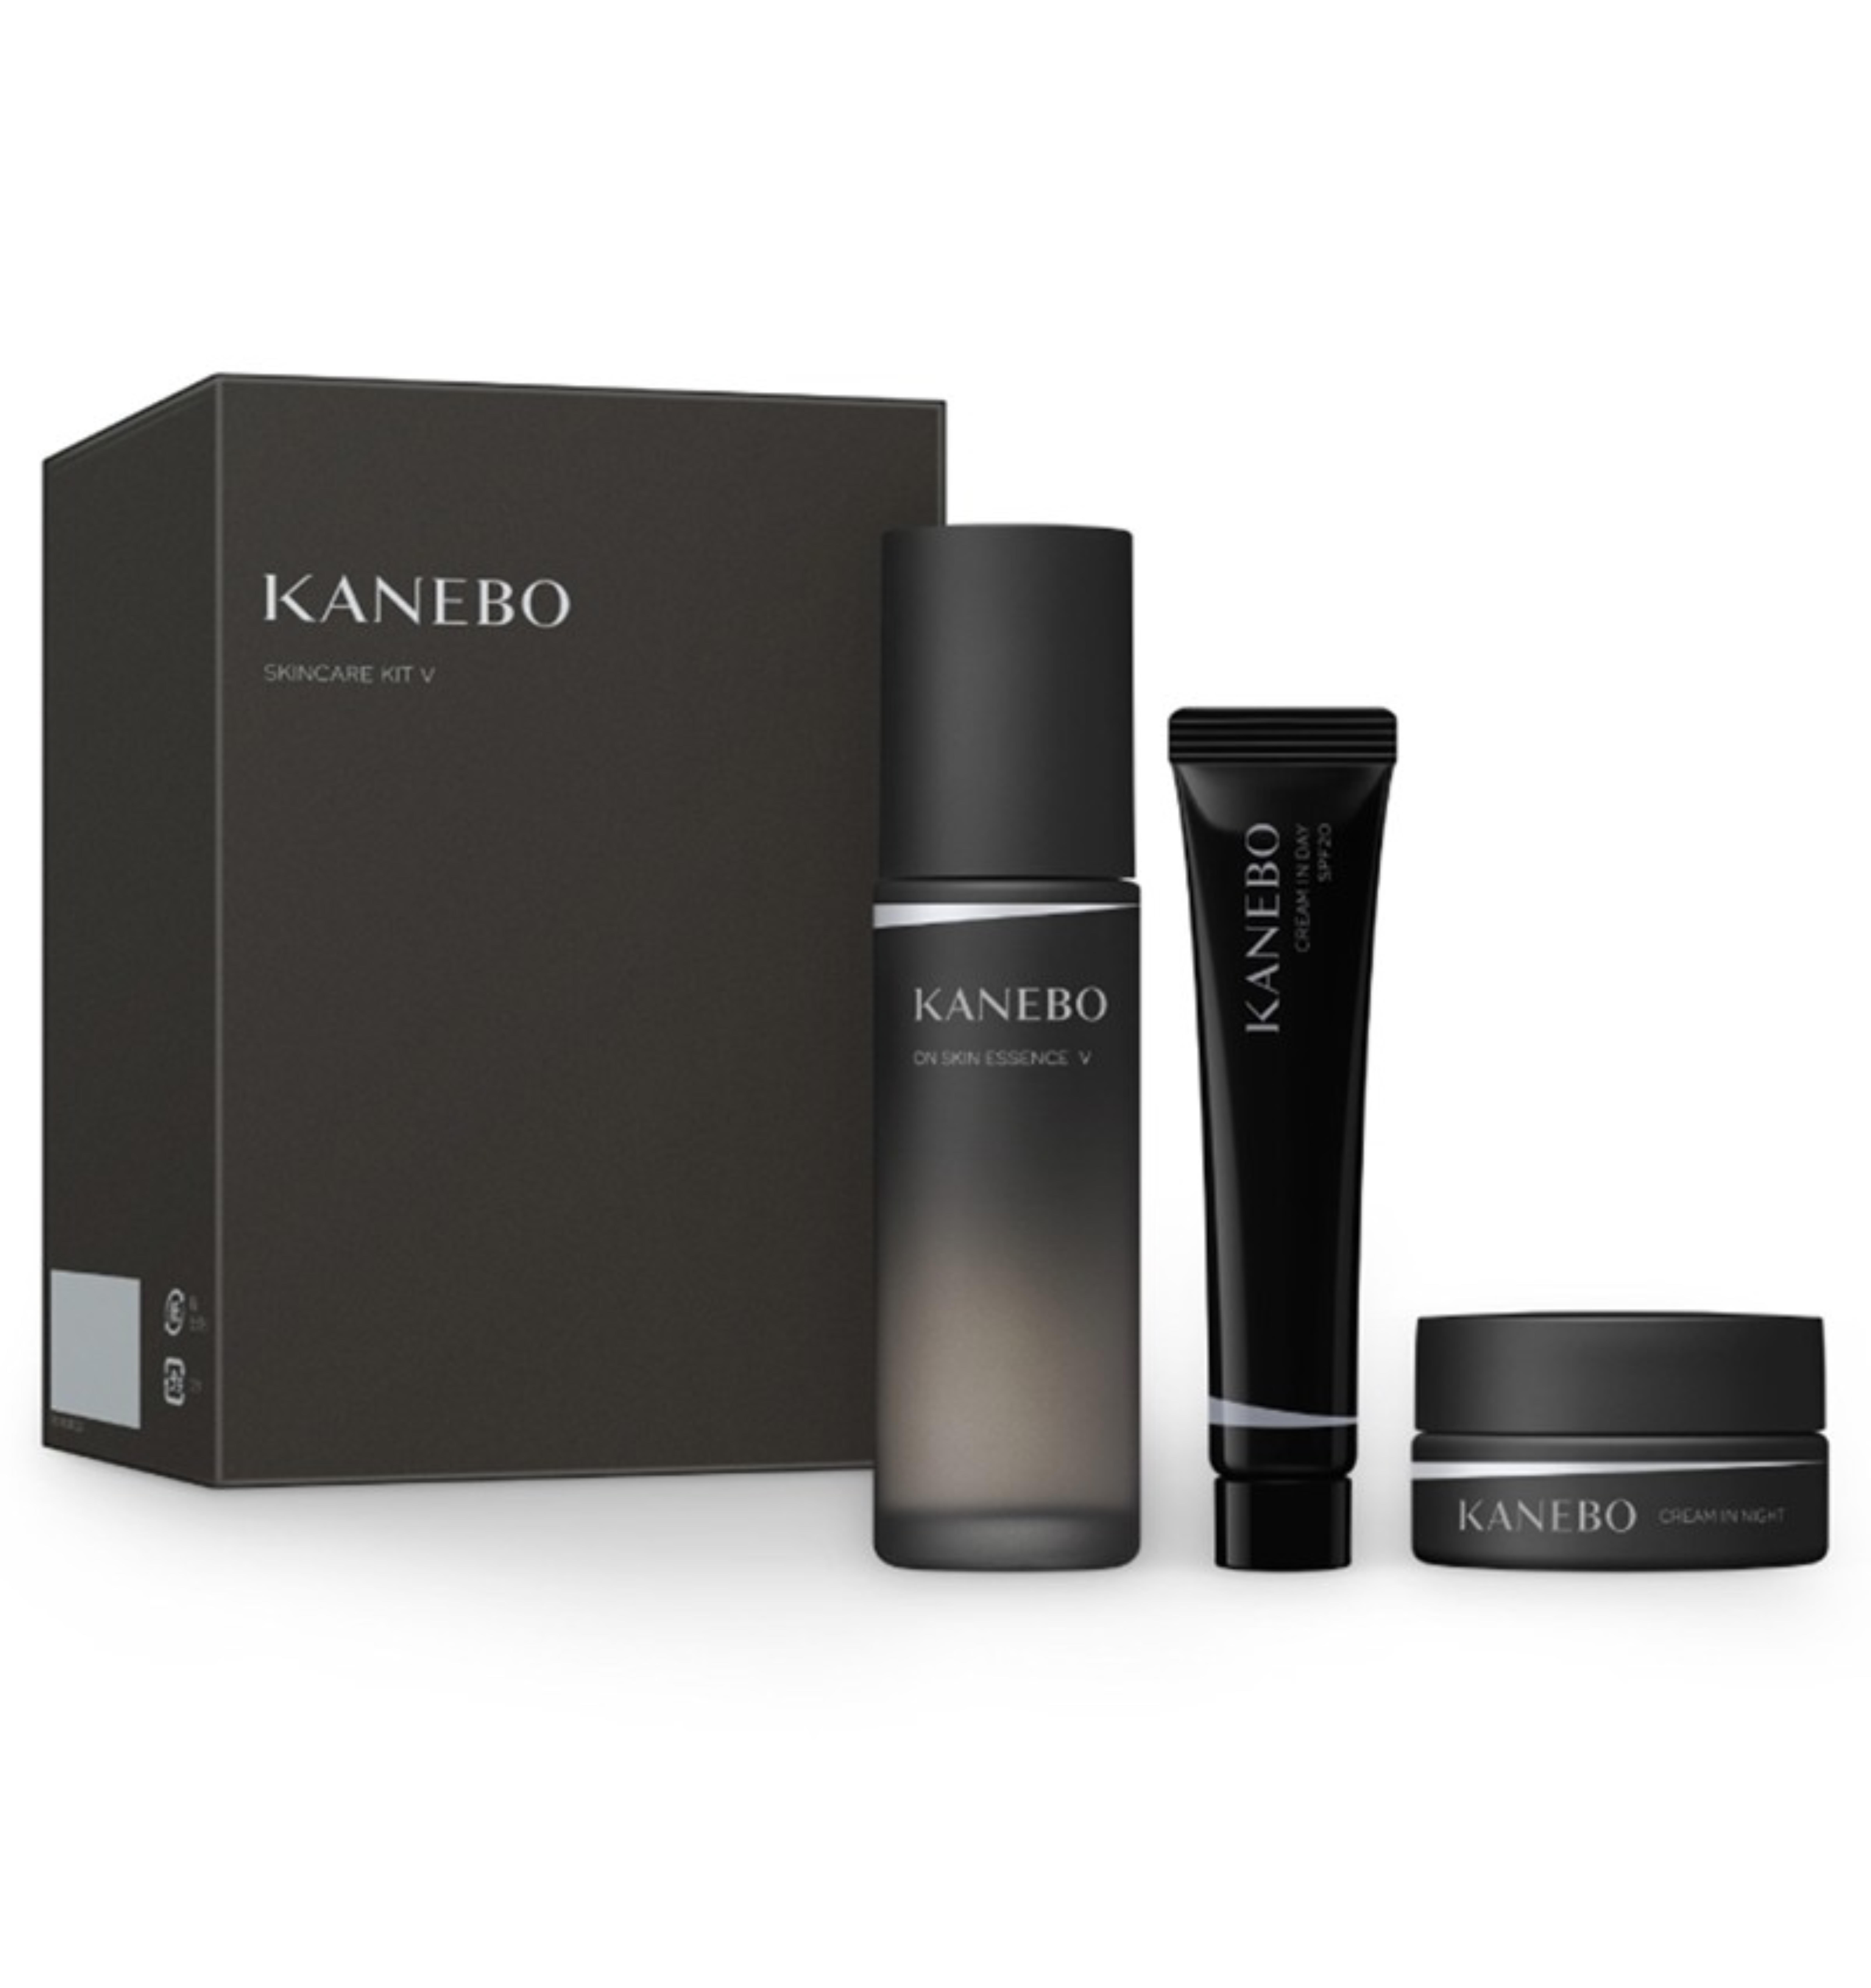 Bộ set dưỡng da Kanebo Skincare Kit V